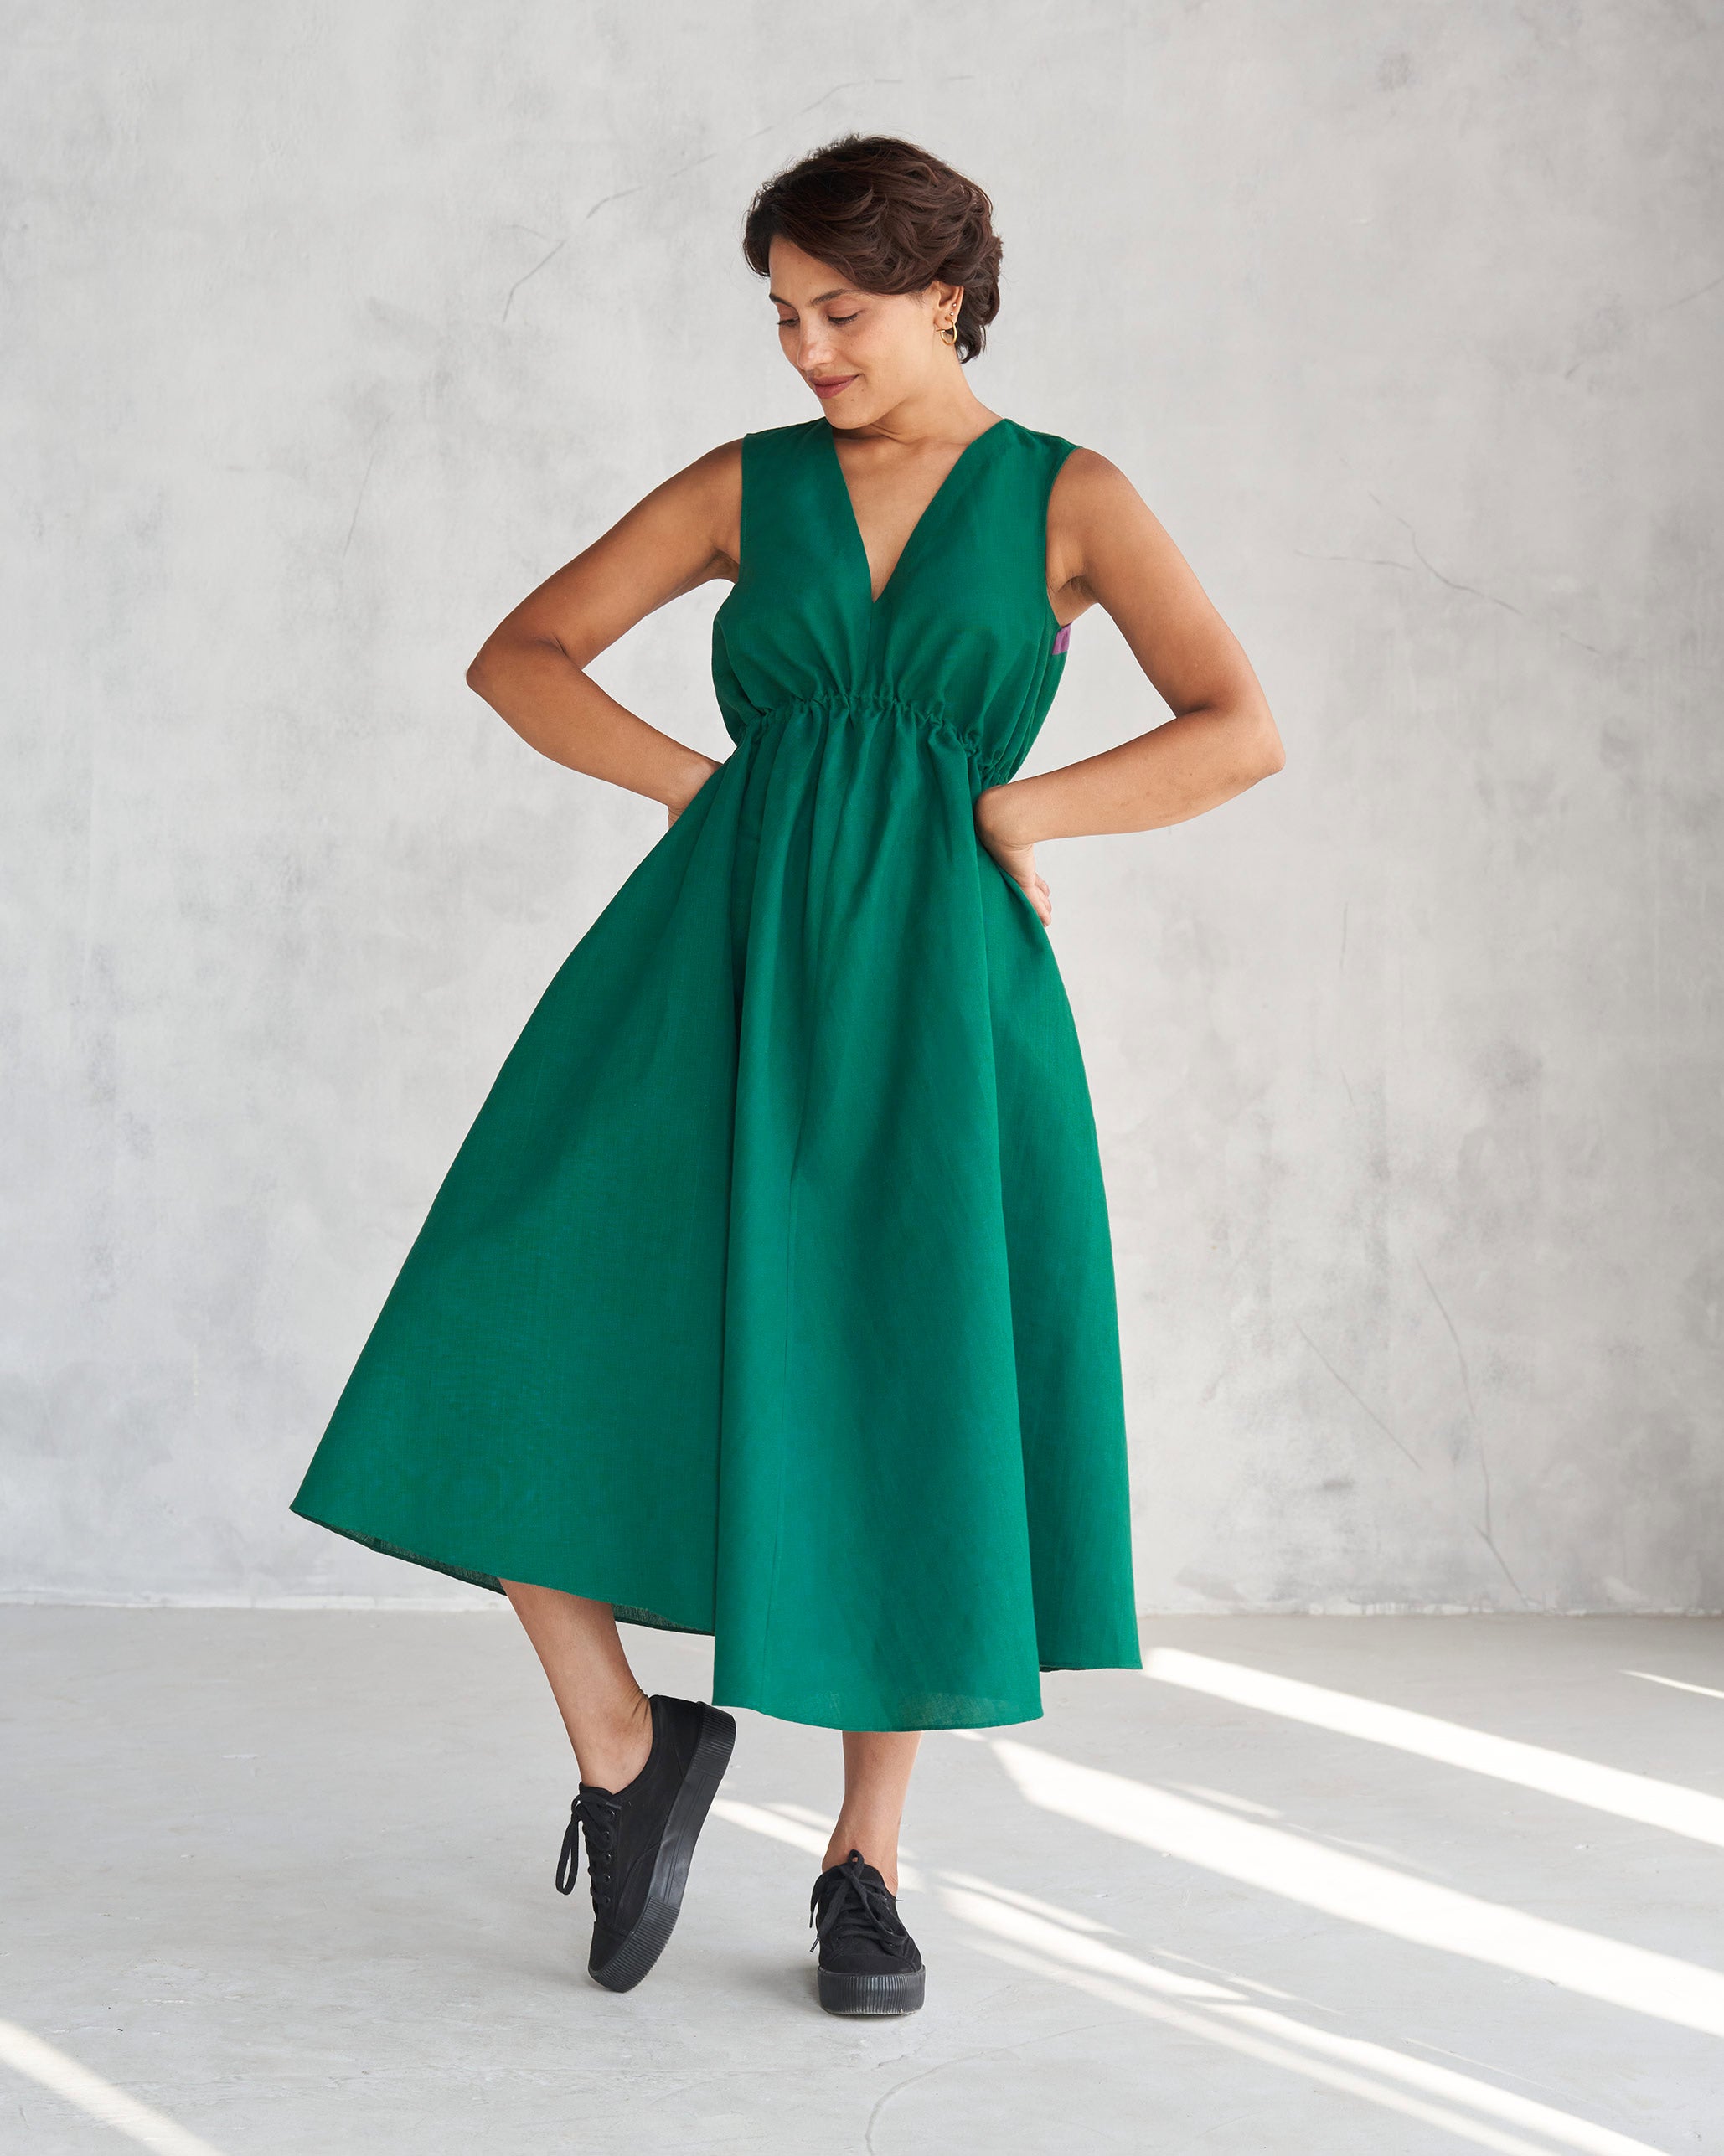 Midori Dress - Green